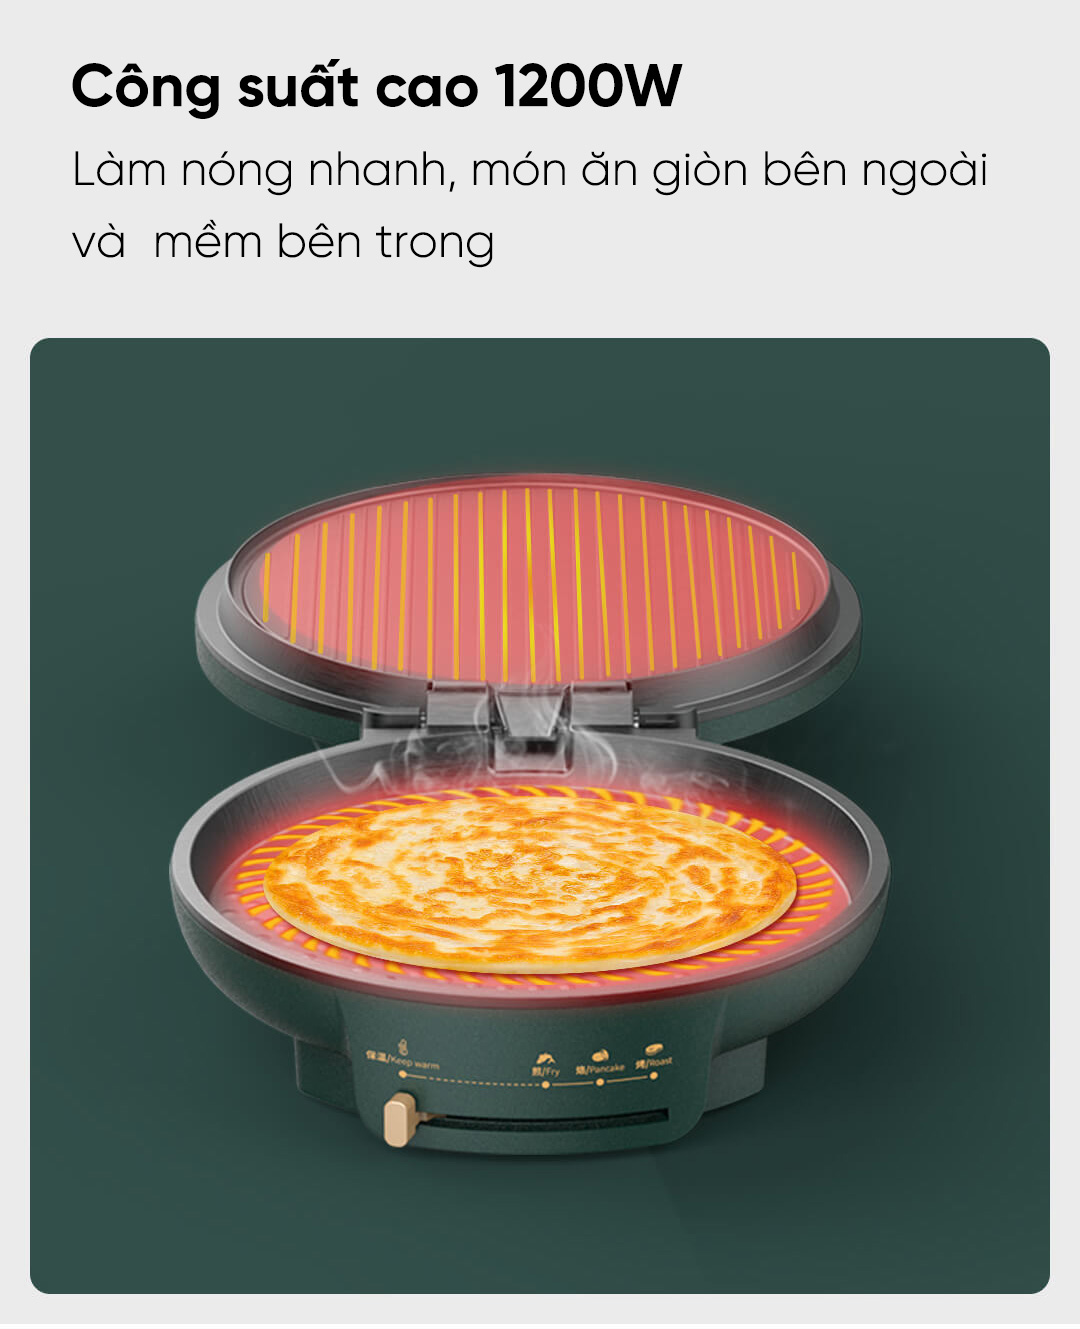 Chảo nướng điện đa năng Xiaomi cho công suất cao lên đến 1200W; làm nóng nhanh, món ăn giòn bên ngoài và mềm bên trong